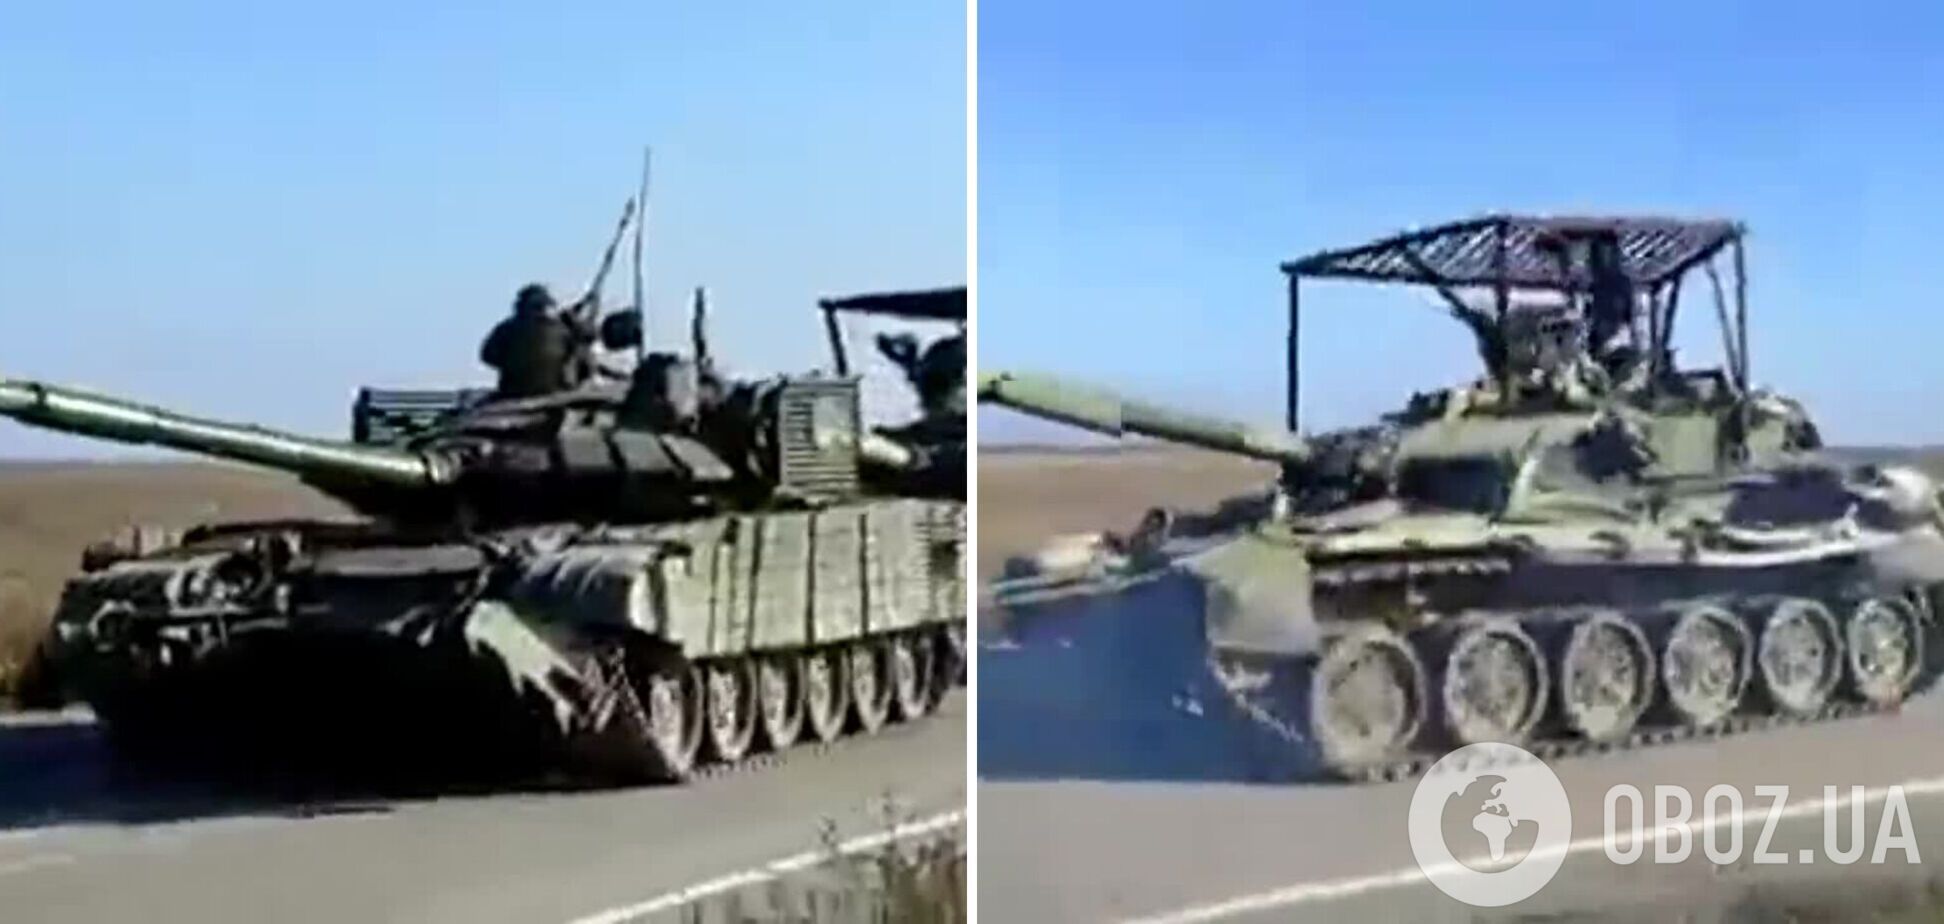 Другий 'ленд-ліз' для ЗСУ: у мережі показали, як затрофеїний російський танк Т-72Б3М тягне ще один захоплений Т-90. Відео 